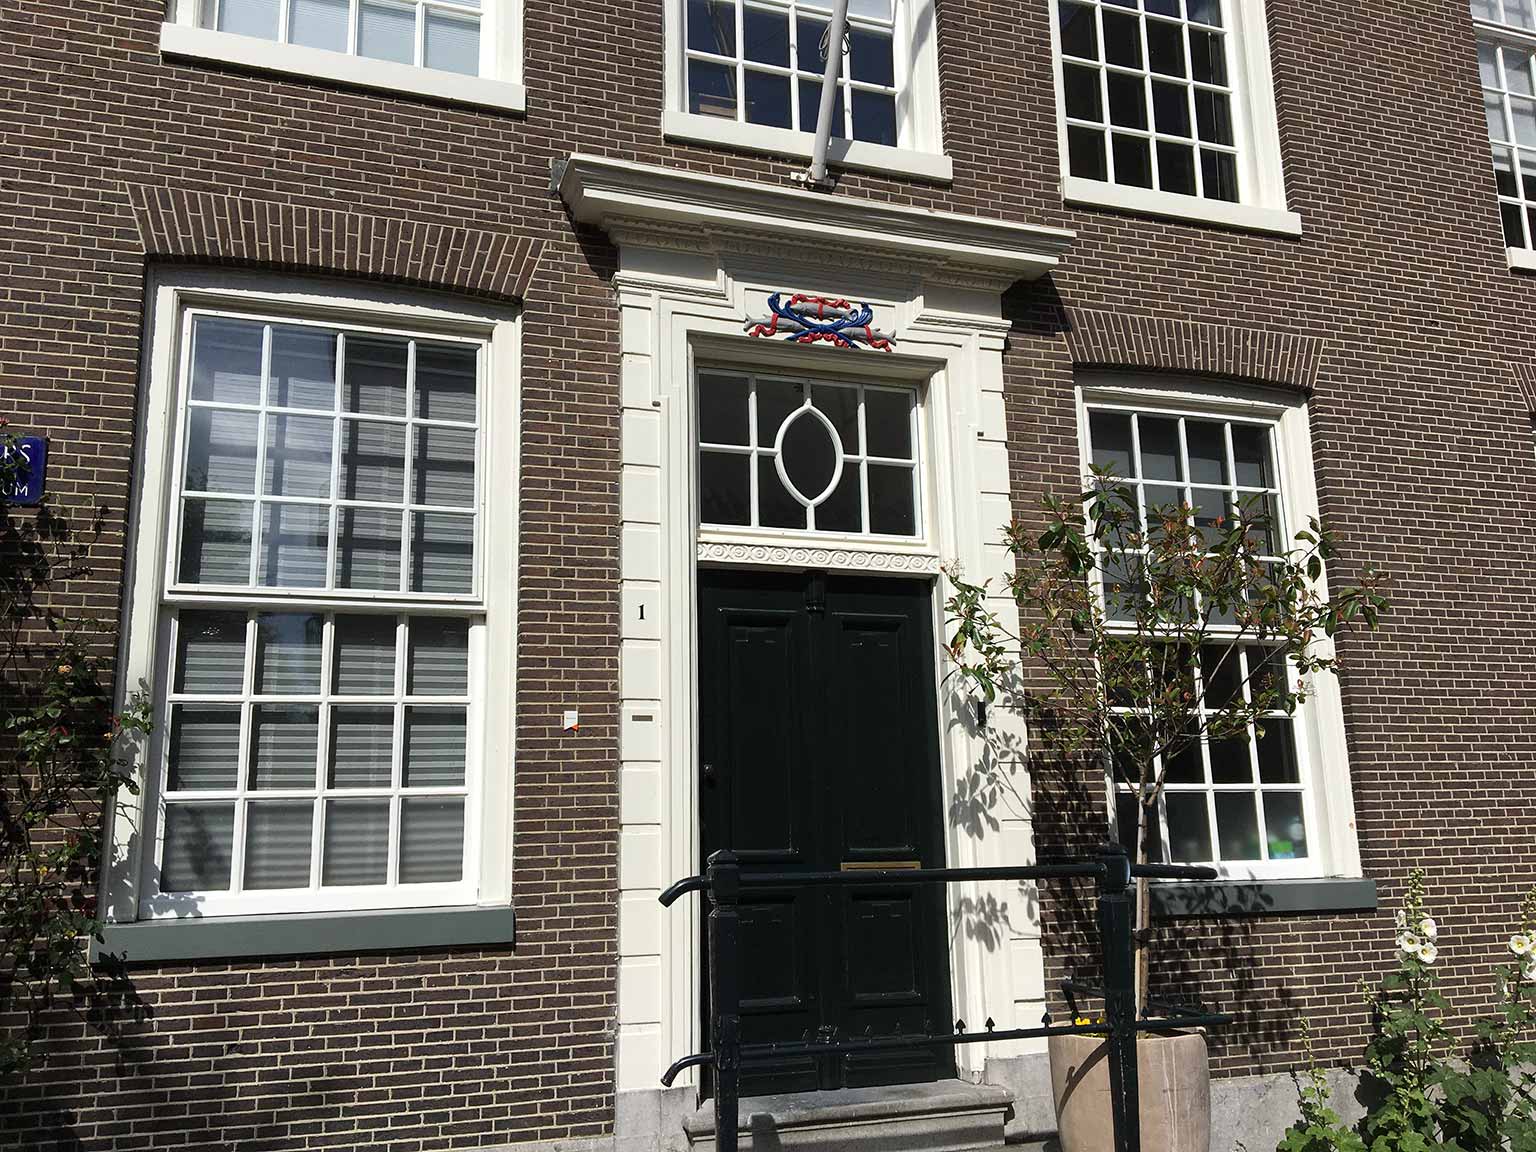 Three herring above the doorway at Vierwindendwarsstraat, Amsterdam